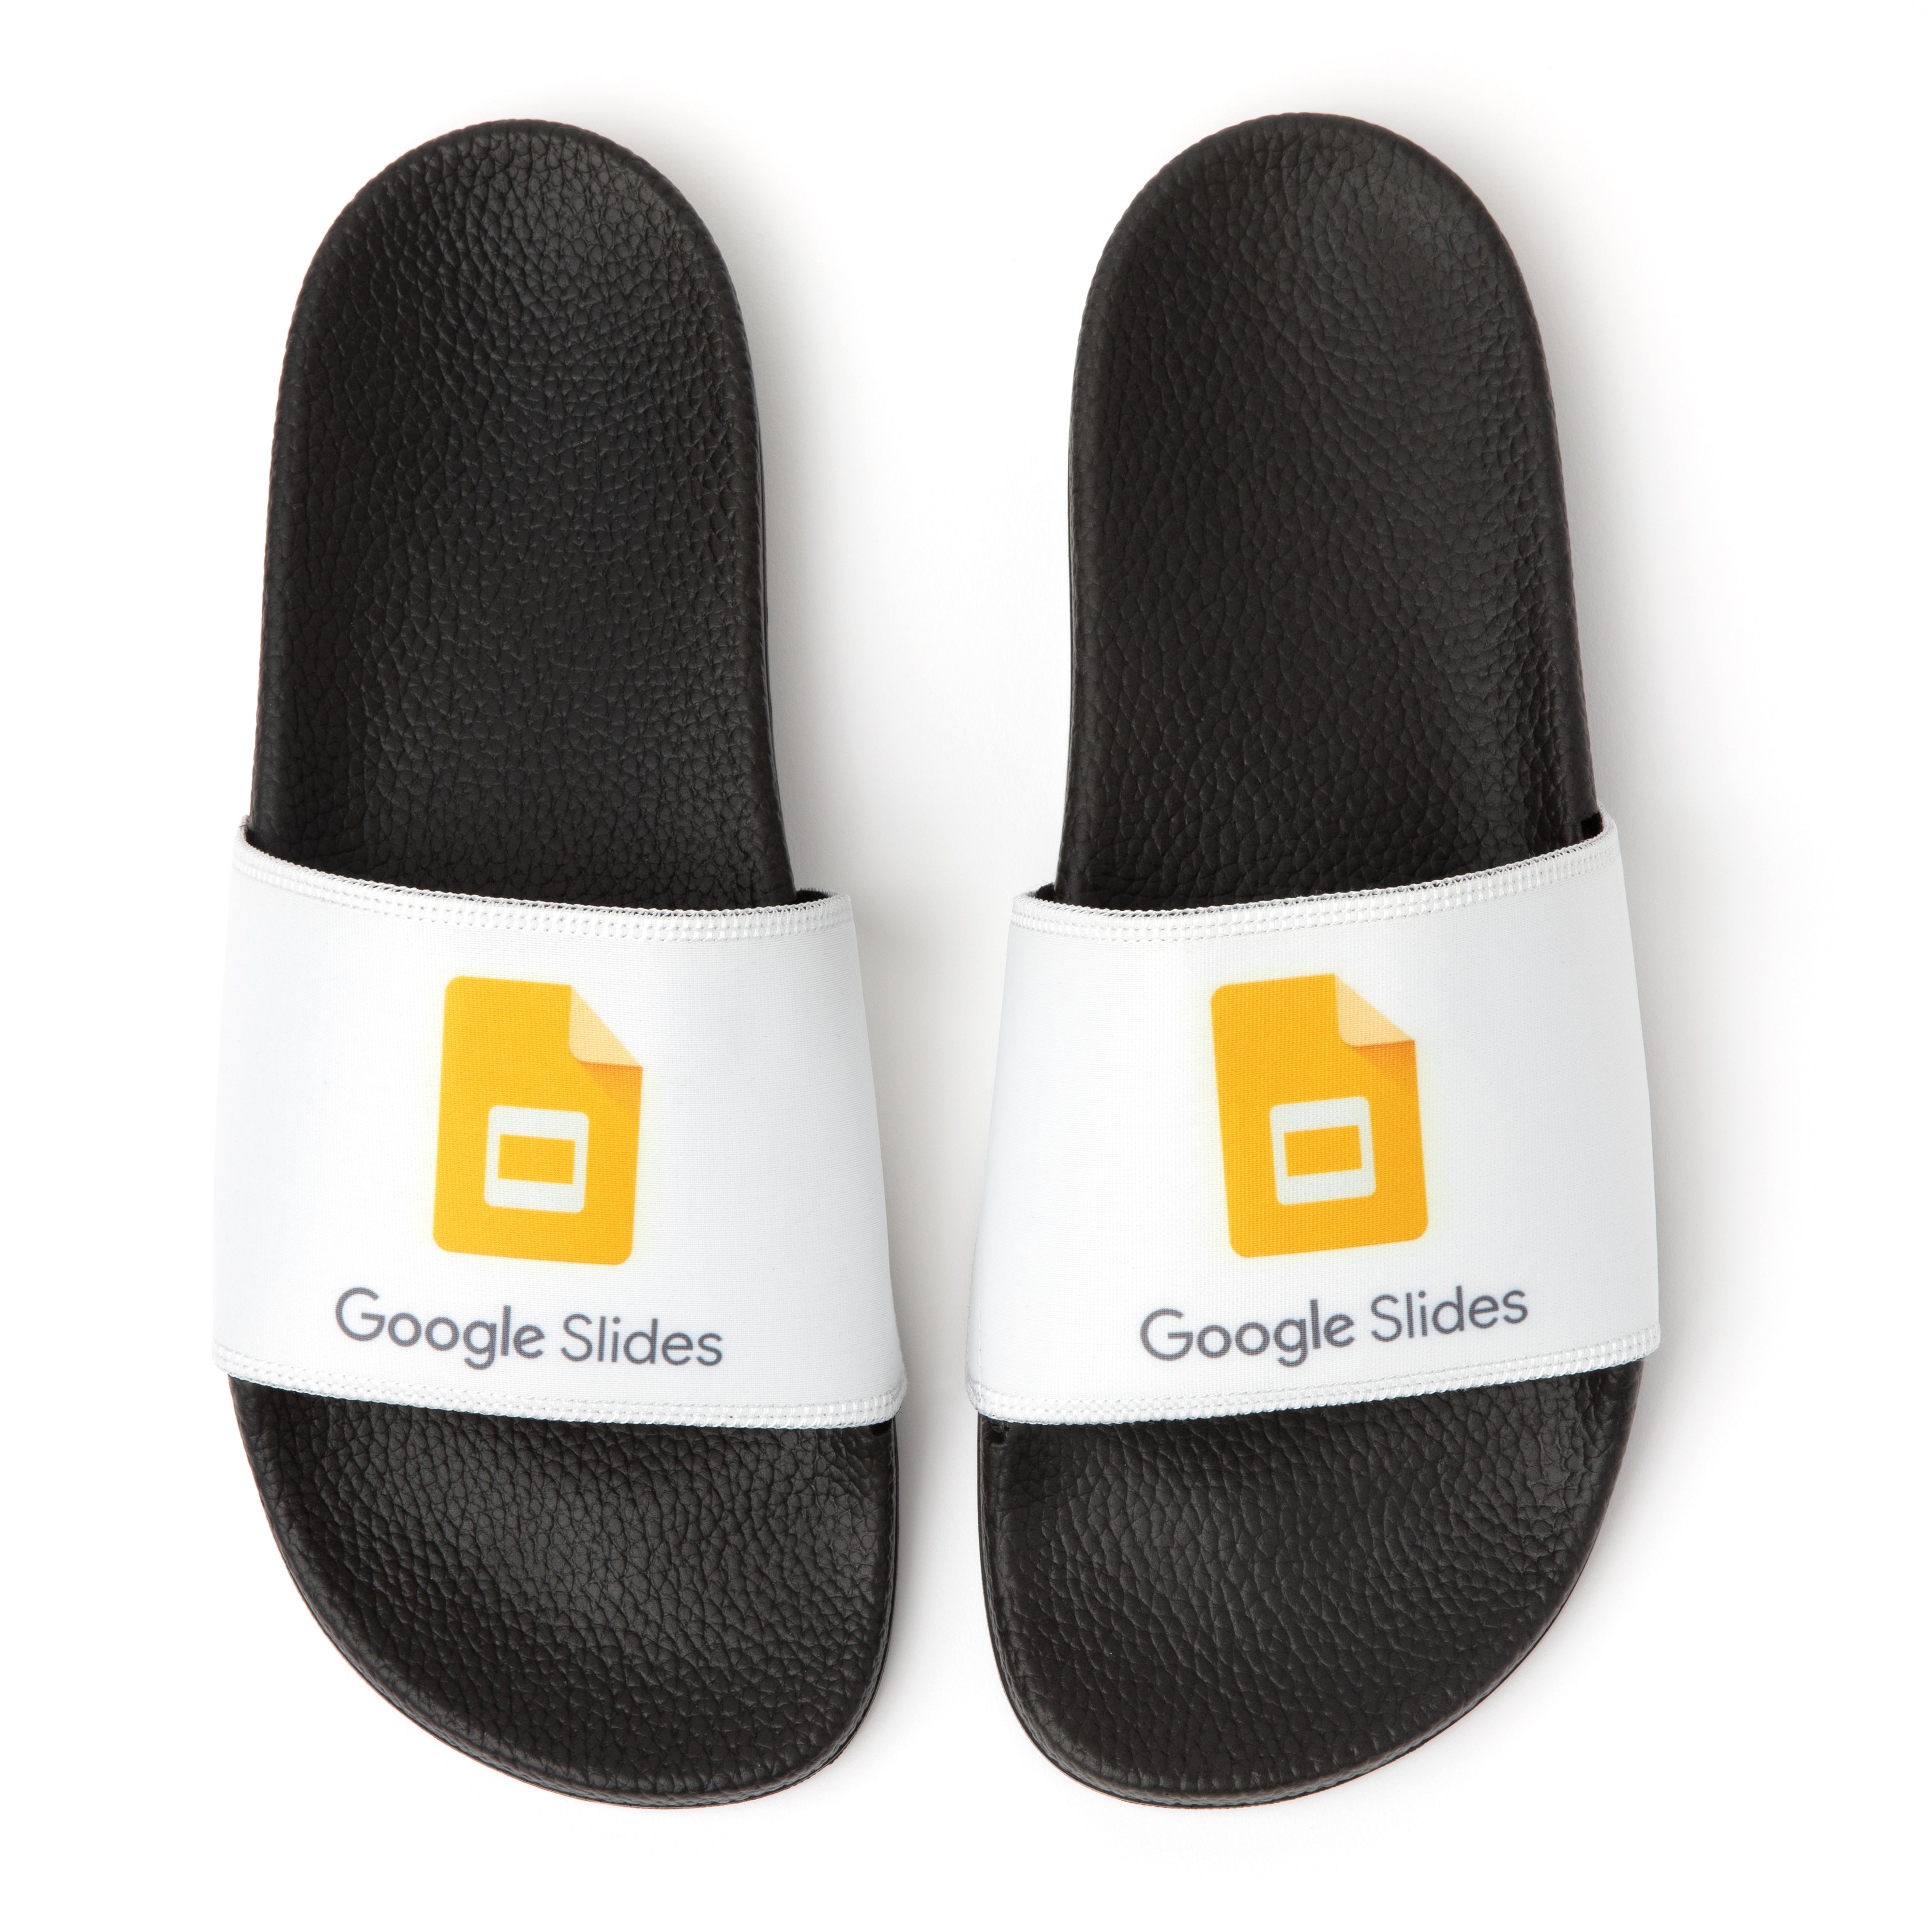 Google Slide Sandals